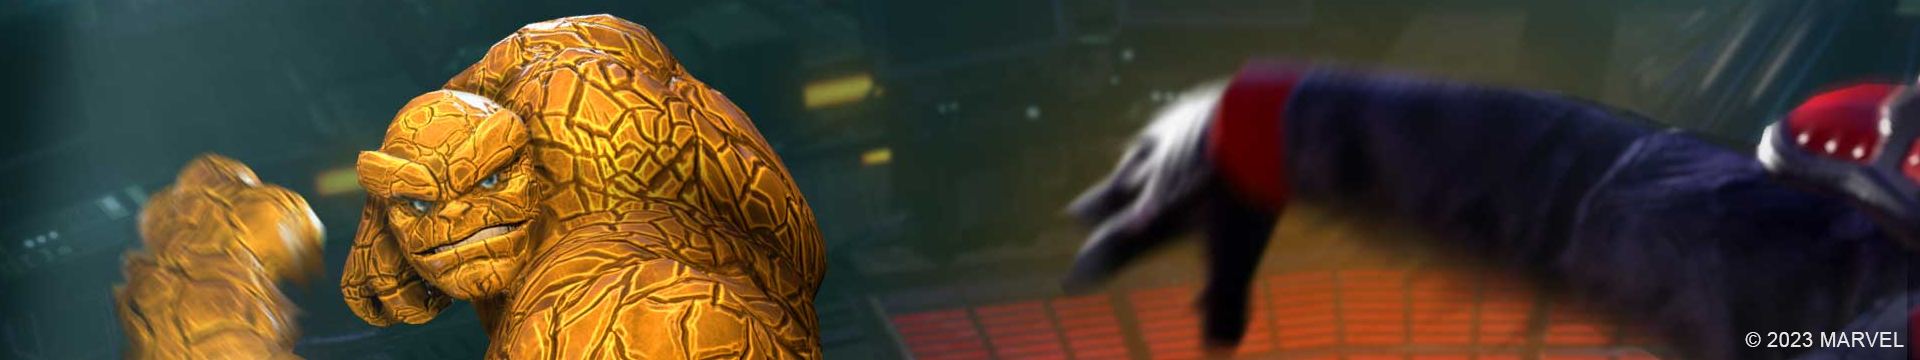 MARVEL Strike Force v7.4 Update Reveals Final Member of the New Avengers  Team